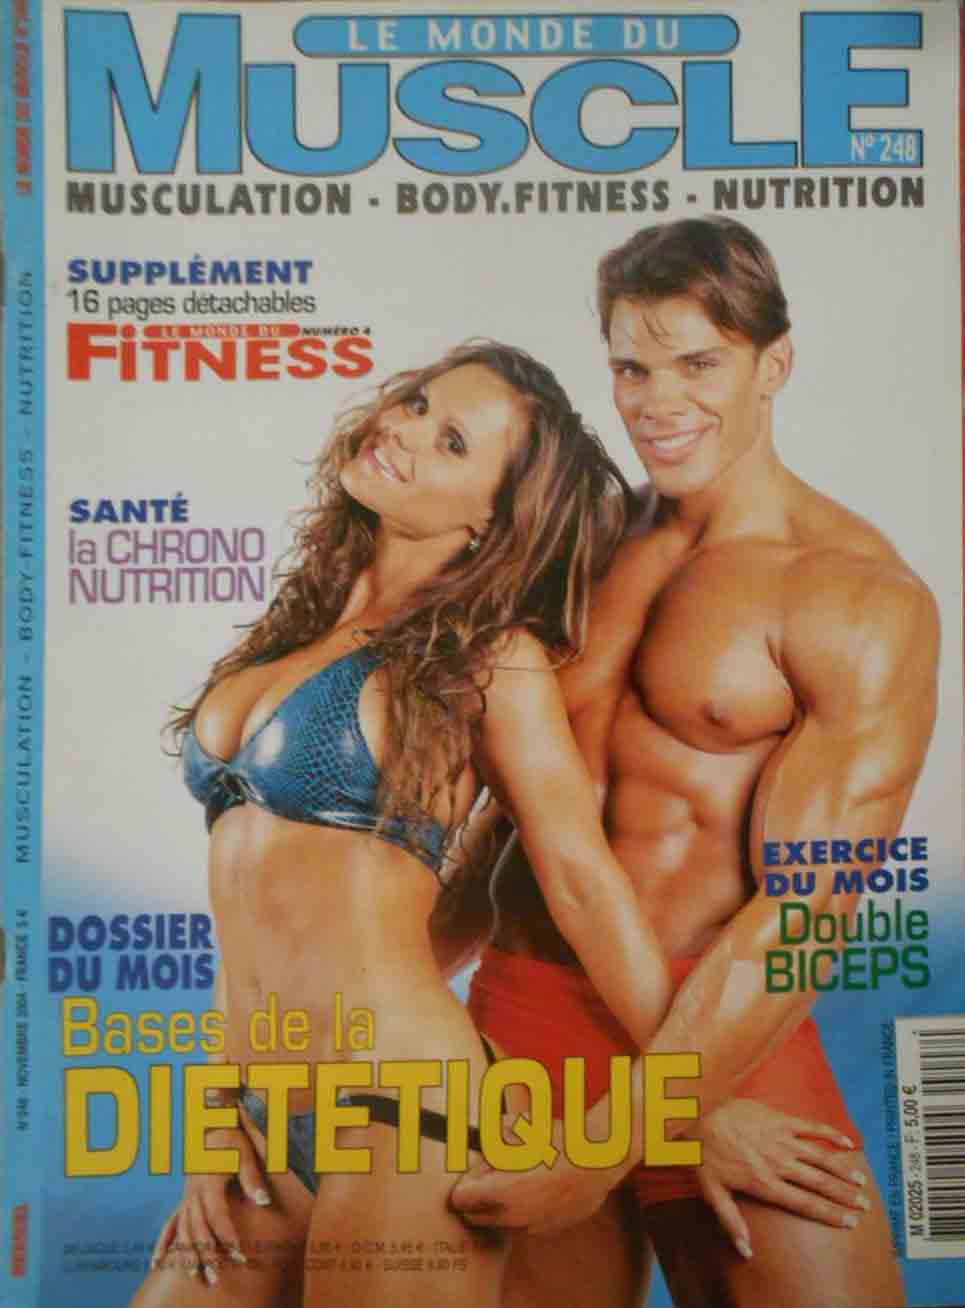 Le Monde du Muscle # 248 magazine back issue Le Monde du Muscle magizine back copy 